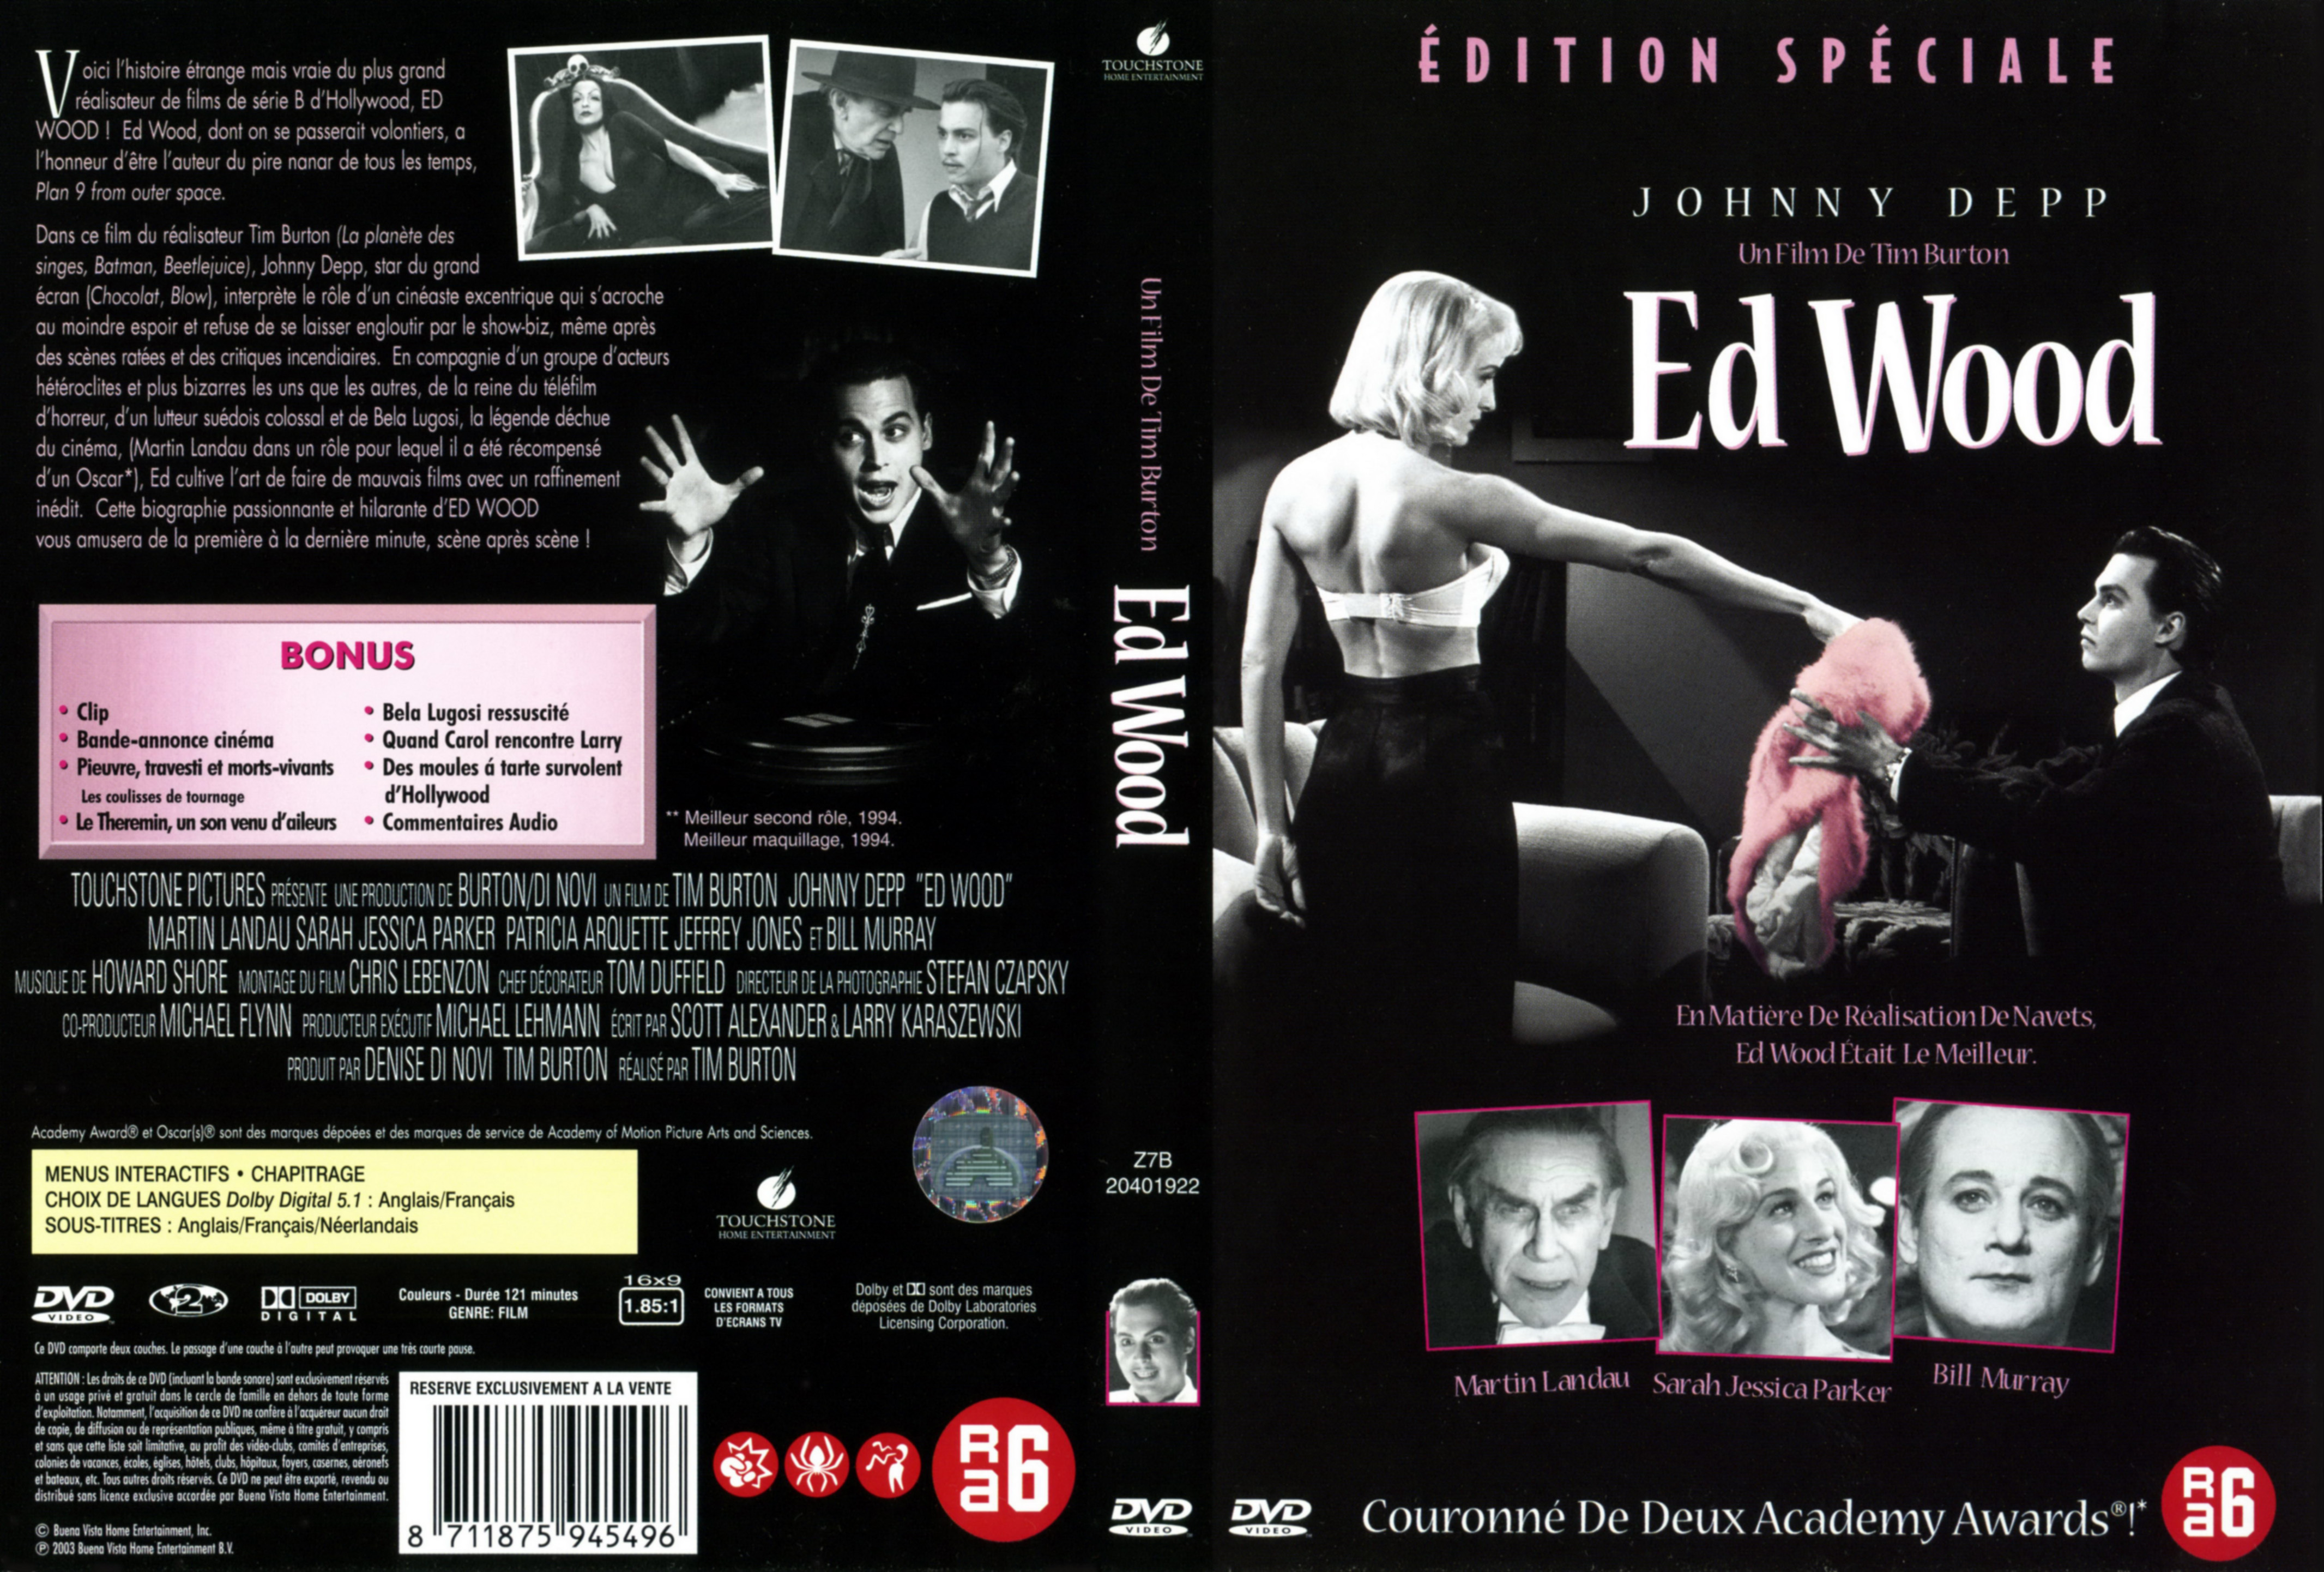 Jaquette DVD Ed Wood v2